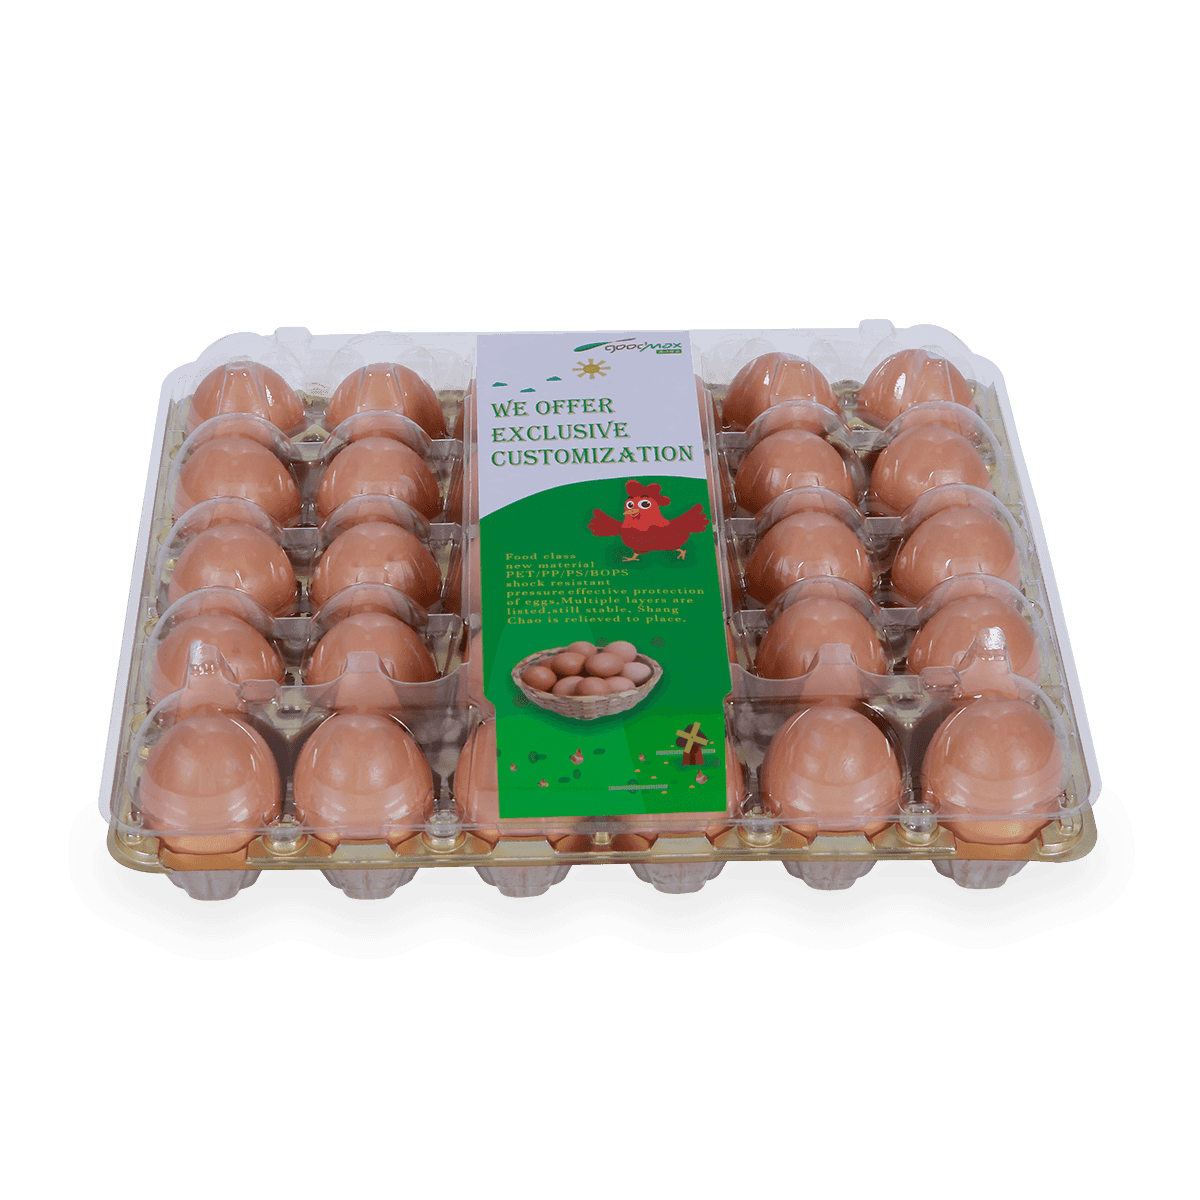 Poultry farm 30 holes cells egg carton